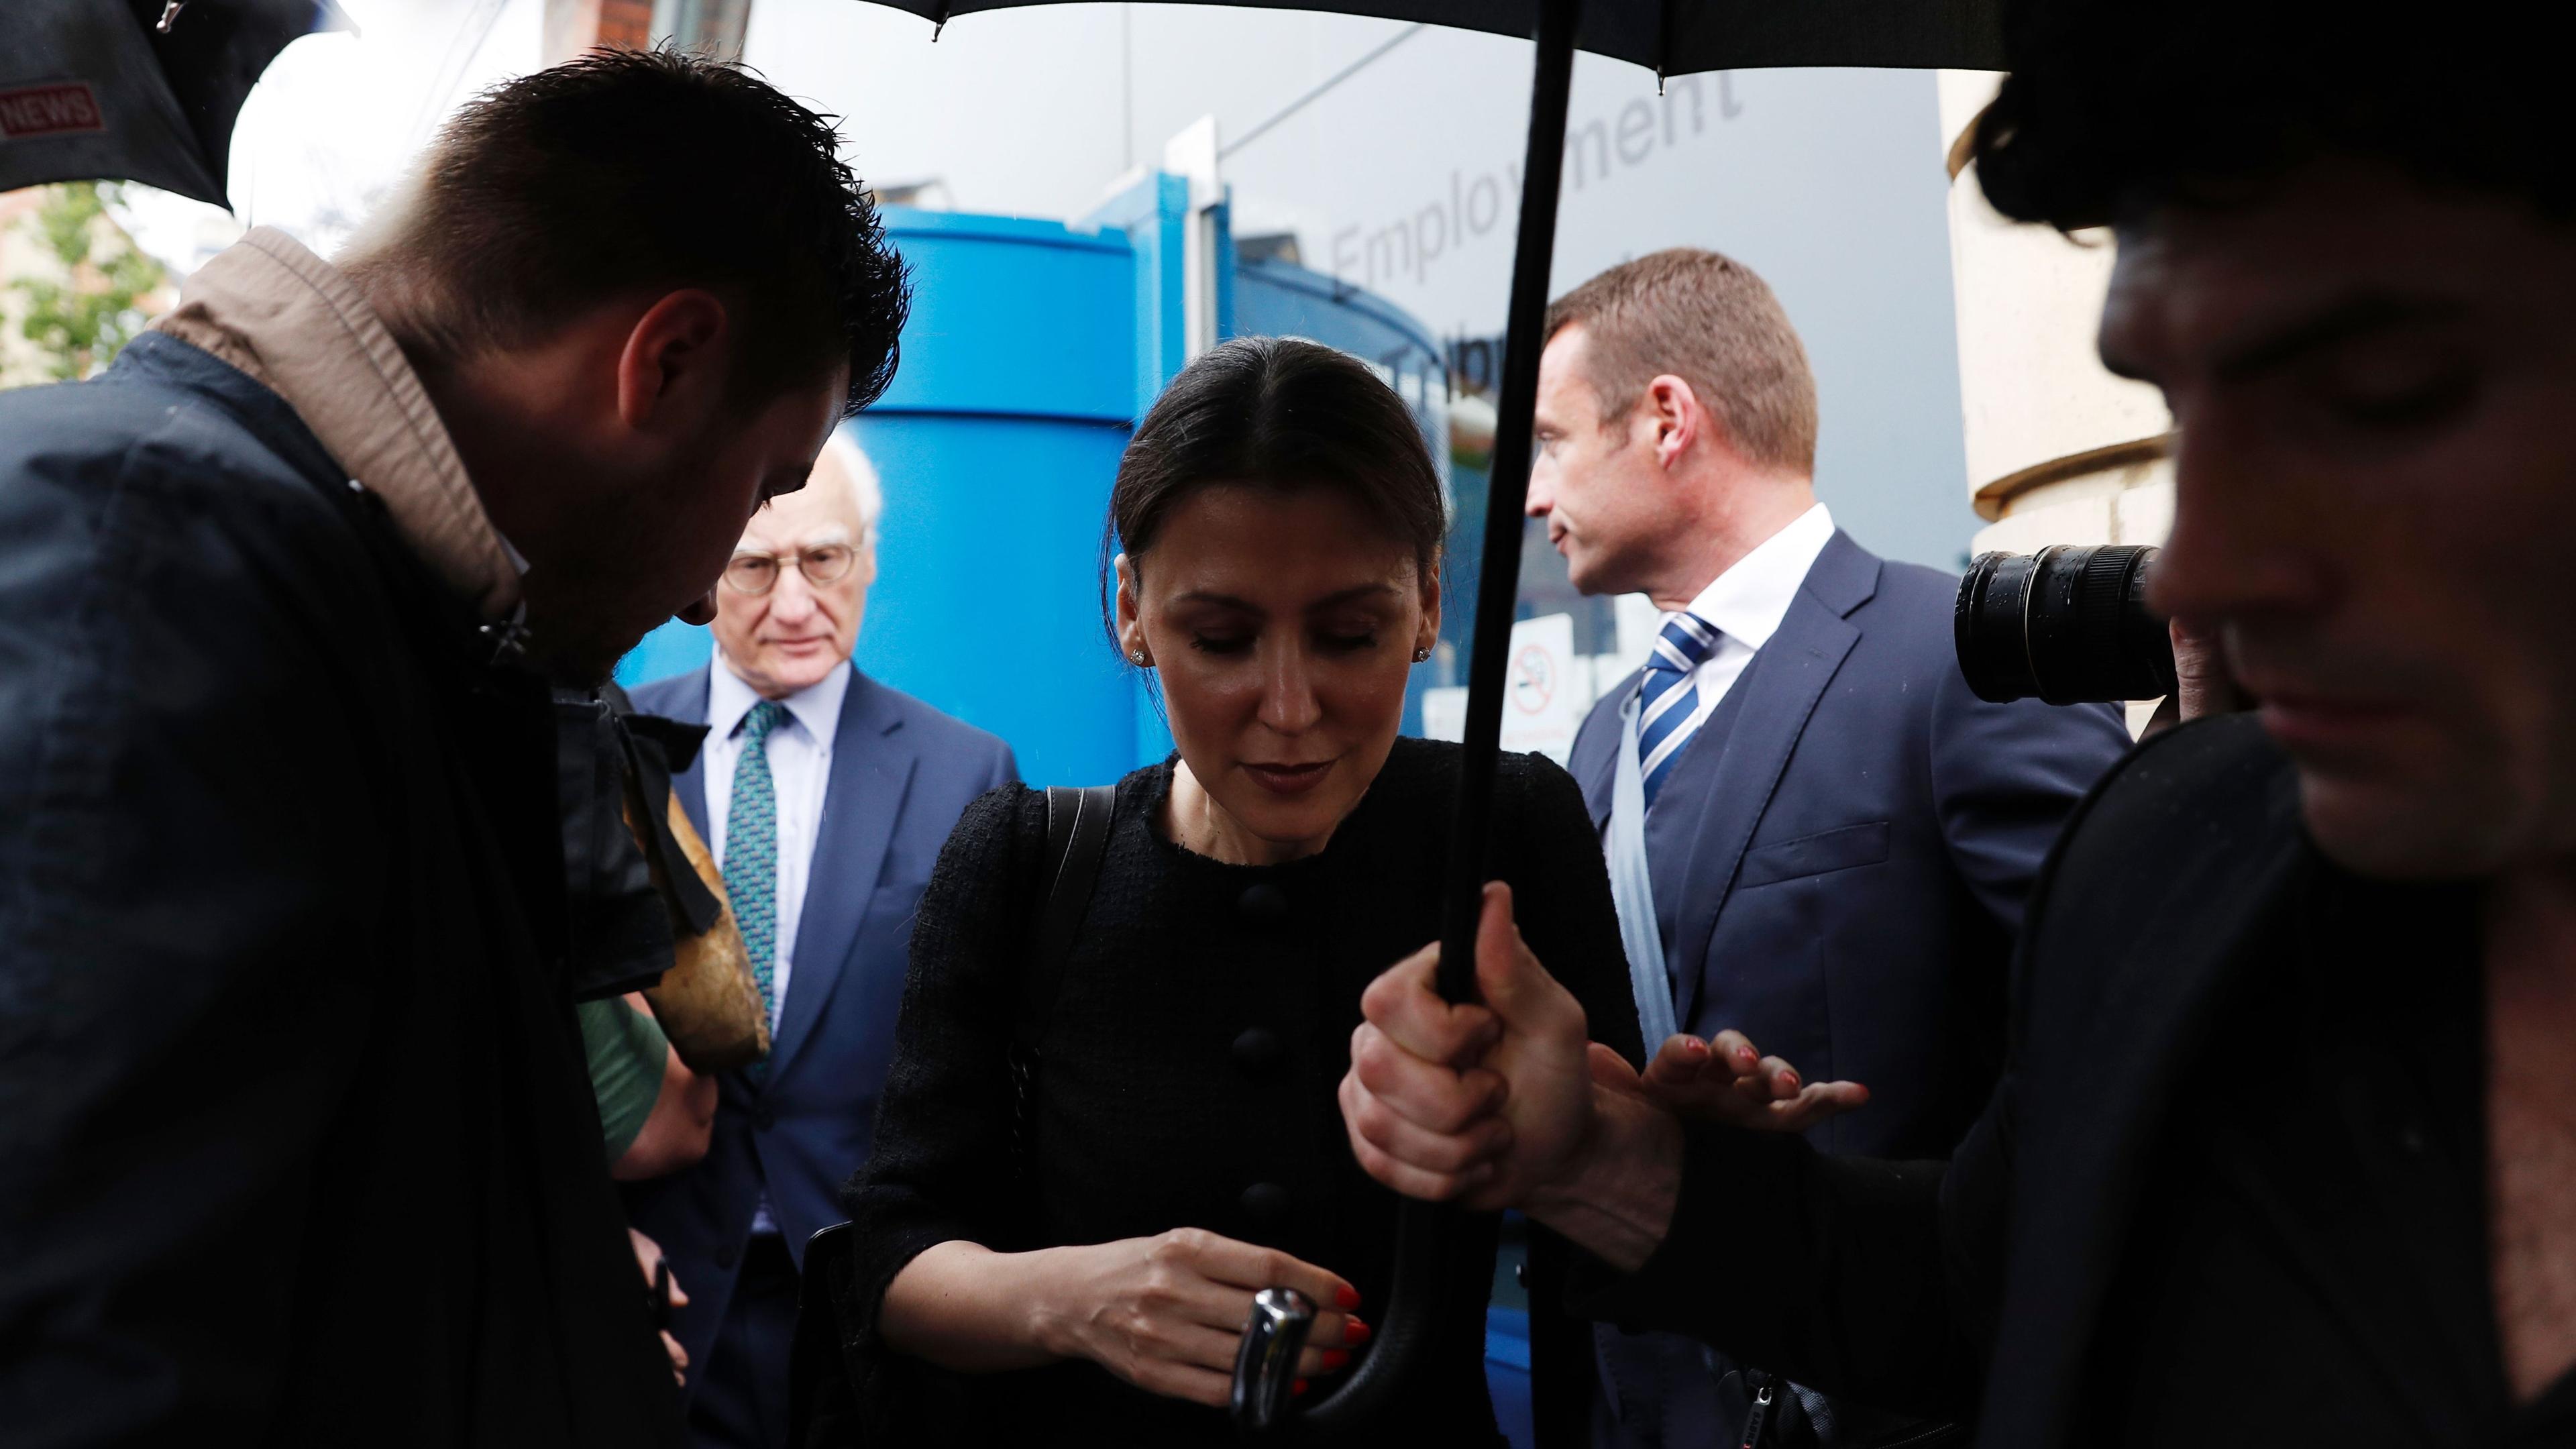 Marina Granovskaja var chef för Chelsea Football club under Roman Abramovitj ägarskap. Nu är hon i en rättssal och vittnar i en affär om pengar och hot från agenten Saif Rubie i samband med en övergång. Foto: Adrian Dennis/AFP/Getty Images